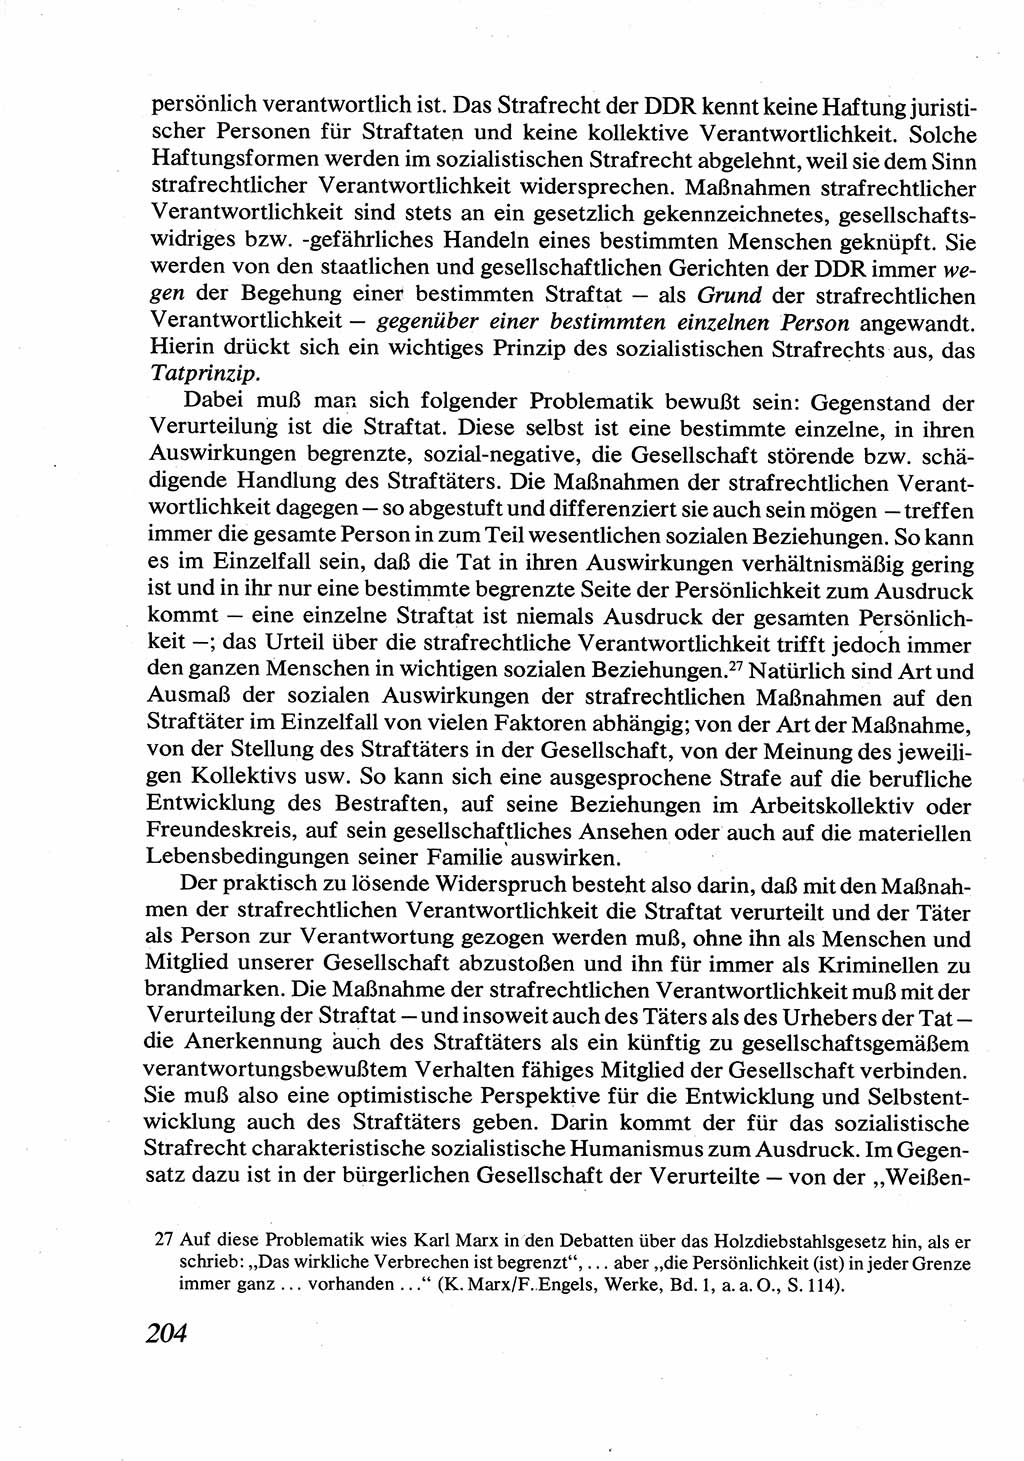 Strafrecht [Deutsche Demokratische Republik (DDR)], Allgemeiner Teil, Lehrbuch 1976, Seite 204 (Strafr. DDR AT Lb. 1976, S. 204)